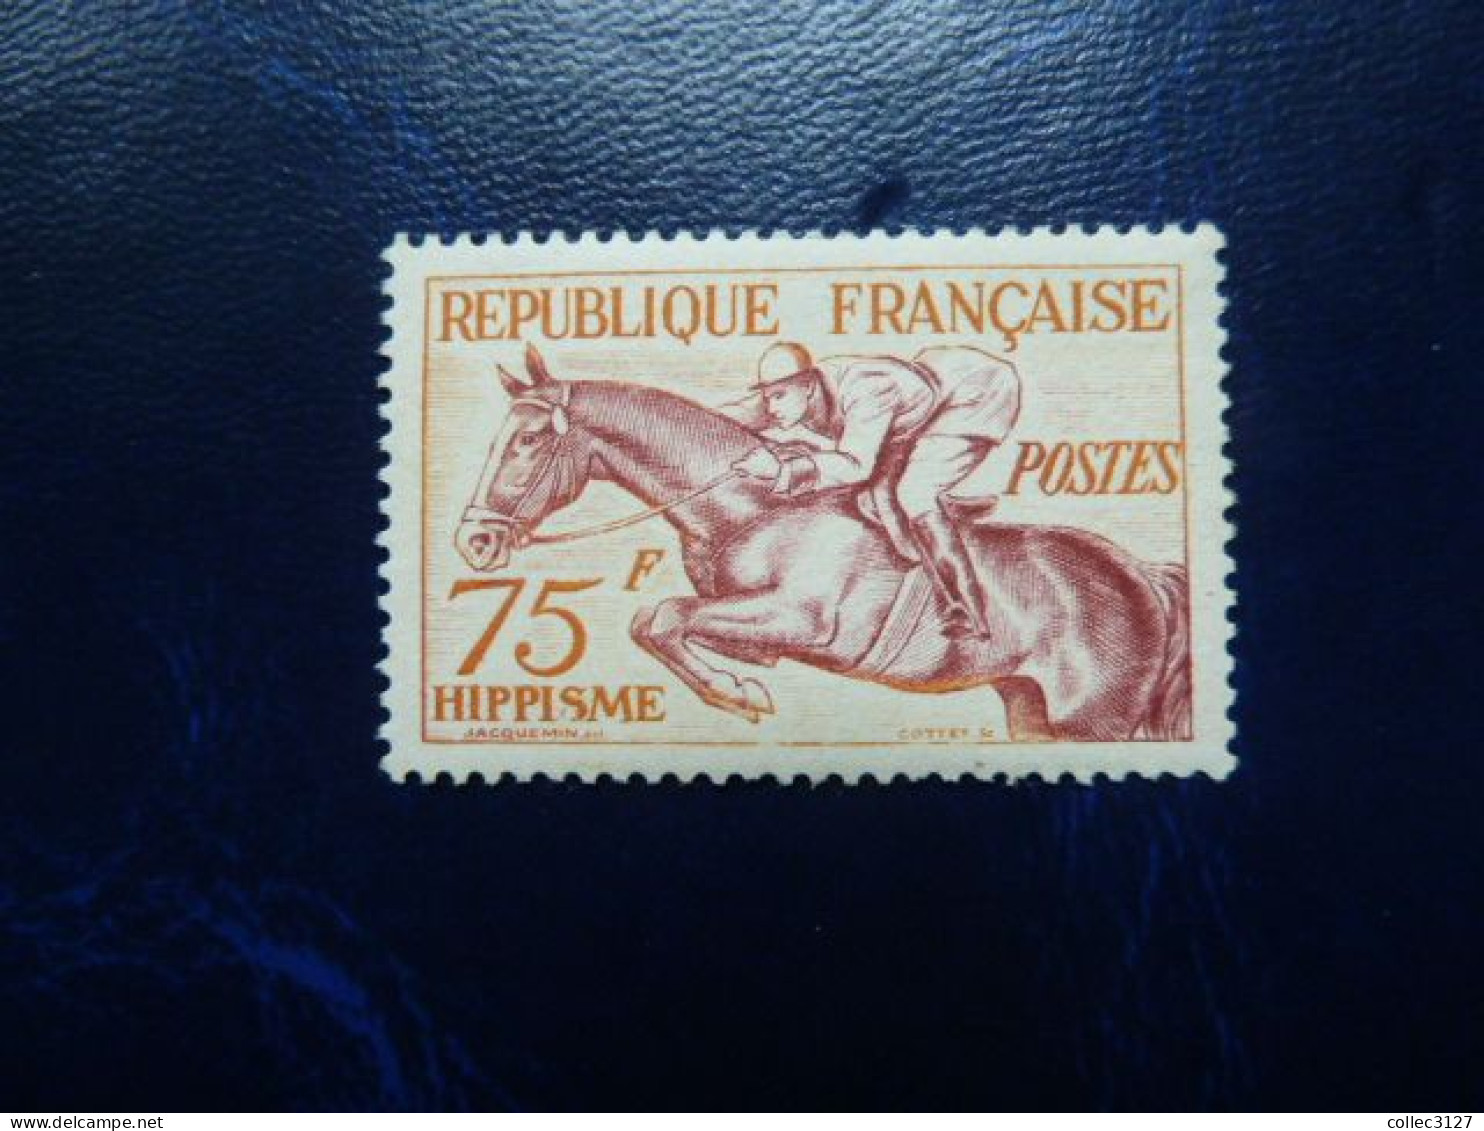 CX3 - France - YT 965 - Jeux D'Helsinki - Hippisme - 1953 - MNH Mais Petites Traces D'adhérences Noire (album) - Unused Stamps